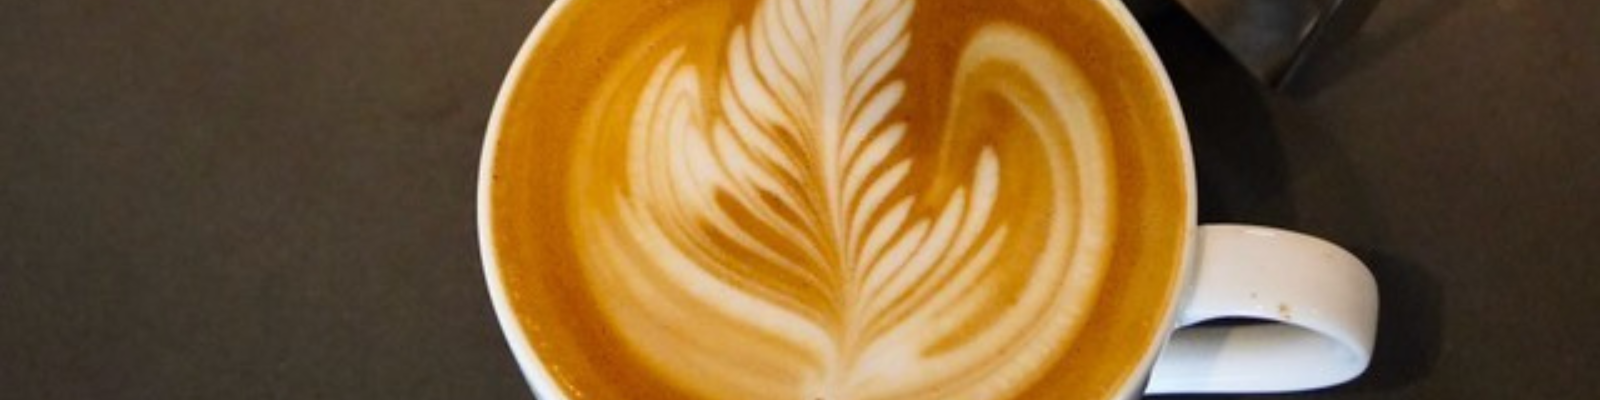 Buy Best Latte Art Milk Pitcher